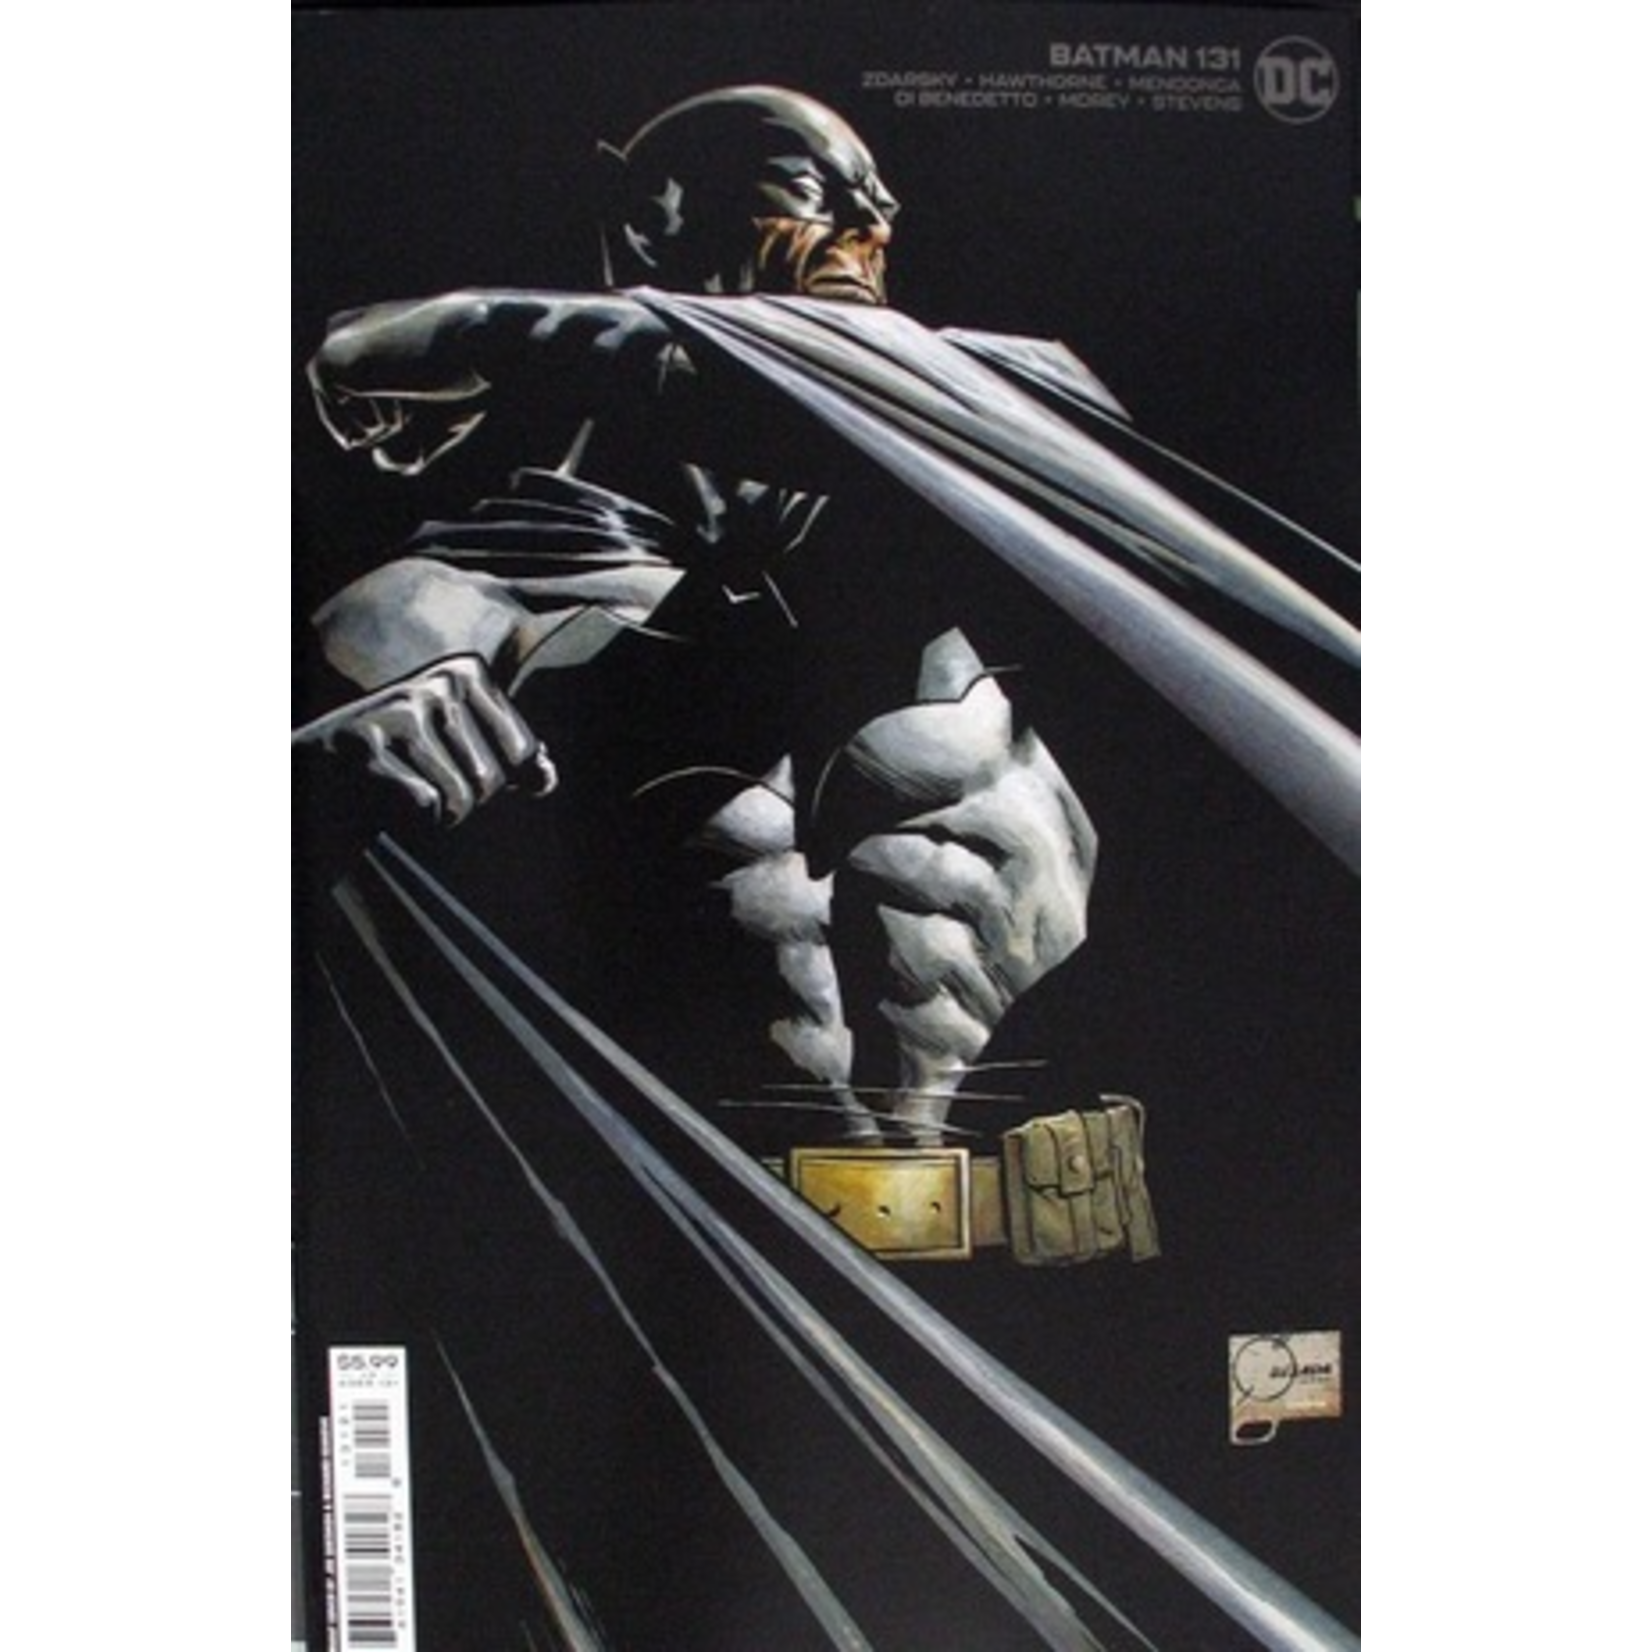 DC Comics BATMAN #131 QUESADA